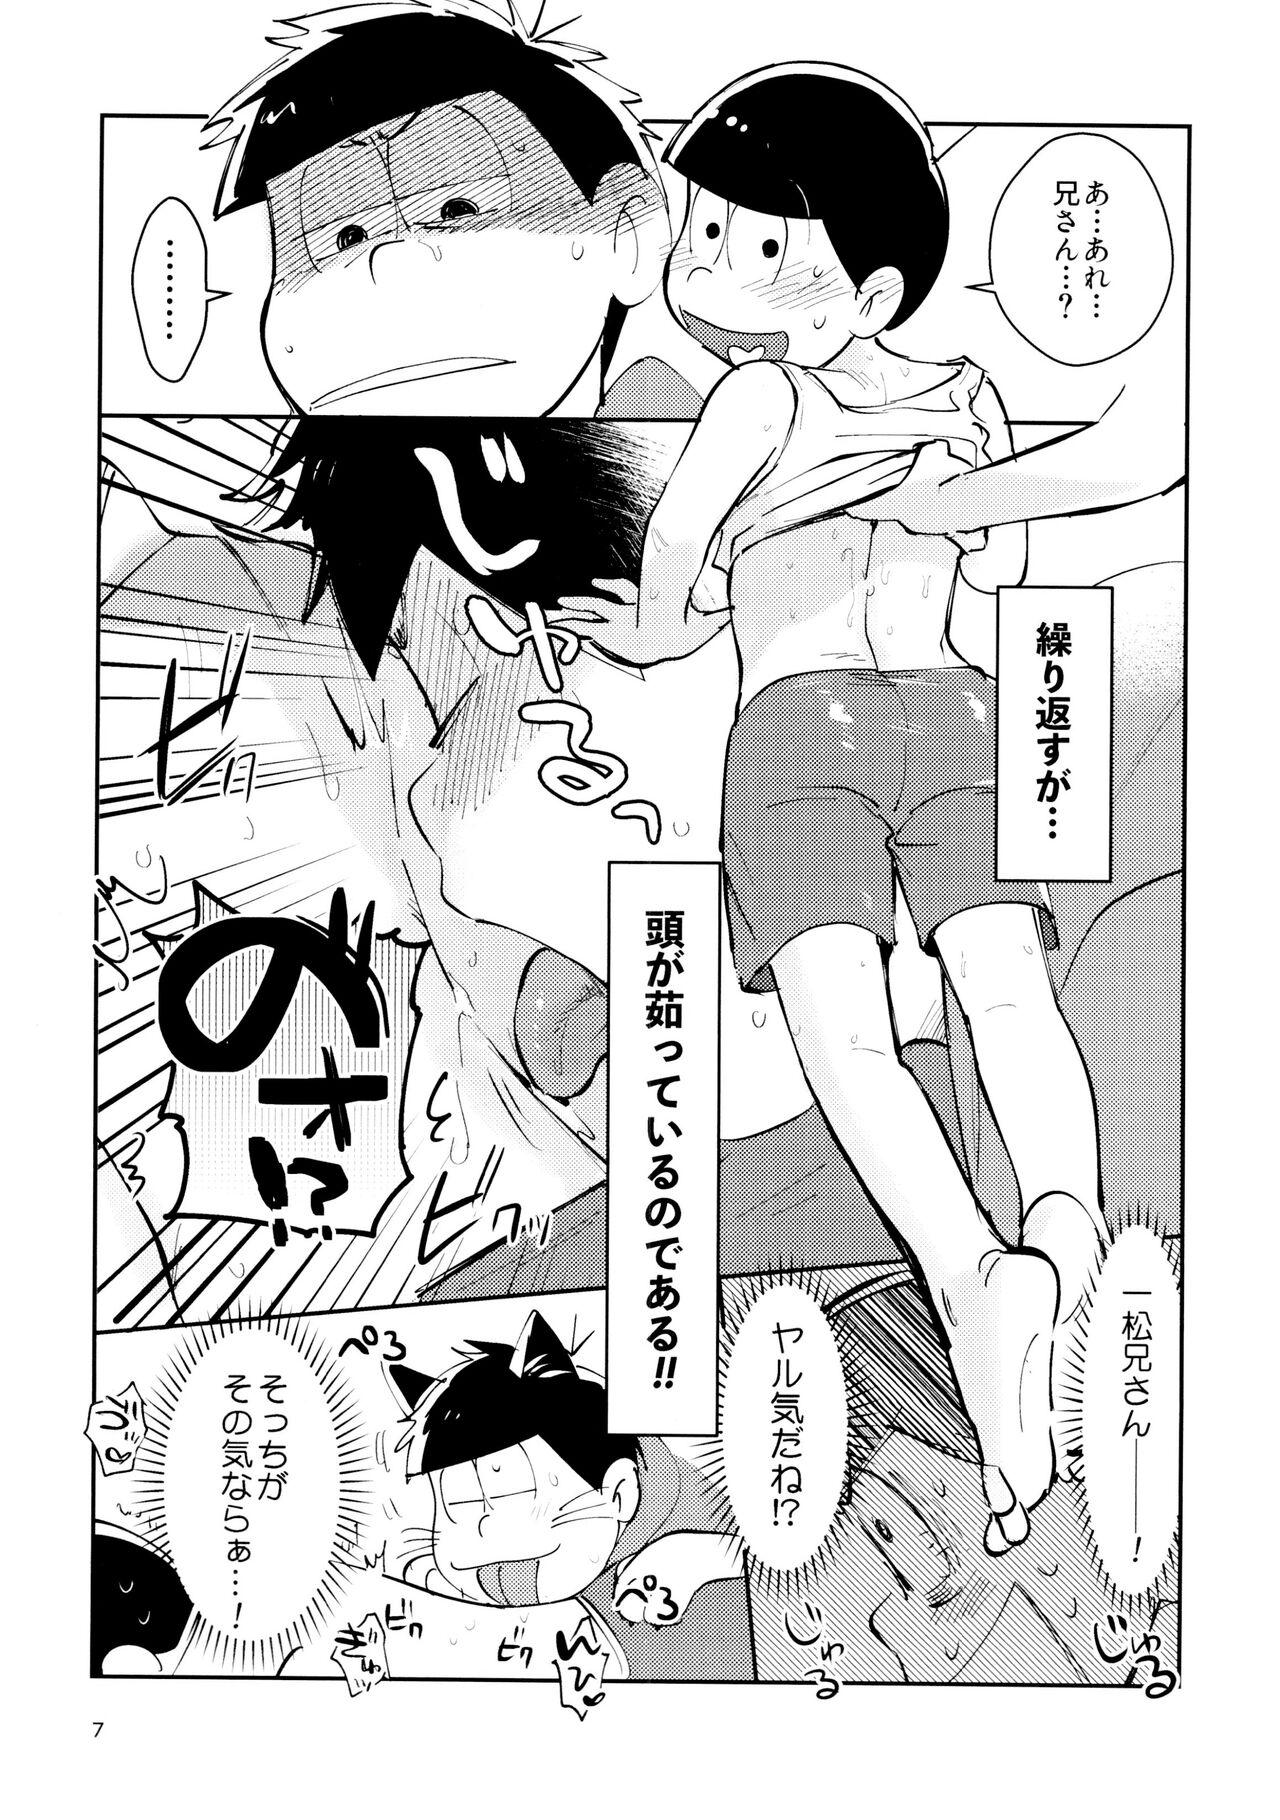 Oral Sex Zatsu Shinkiro's - Osomatsu-san Deepthroat - Page 7